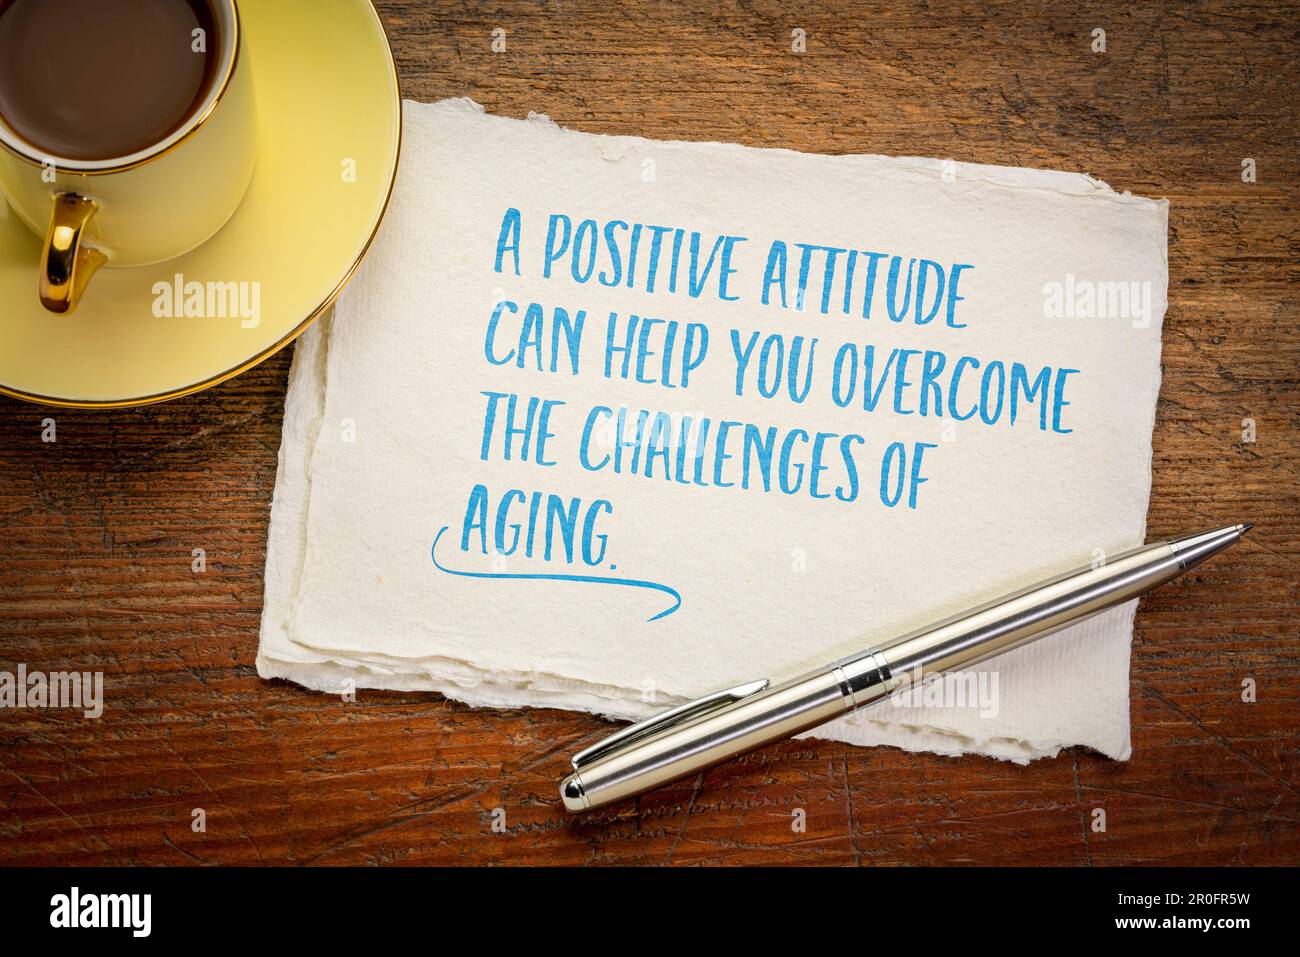 une attitude positive peut vous aider à surmonter les défis du vieillissement, note d'inspiration sur un papier d'art Banque D'Images